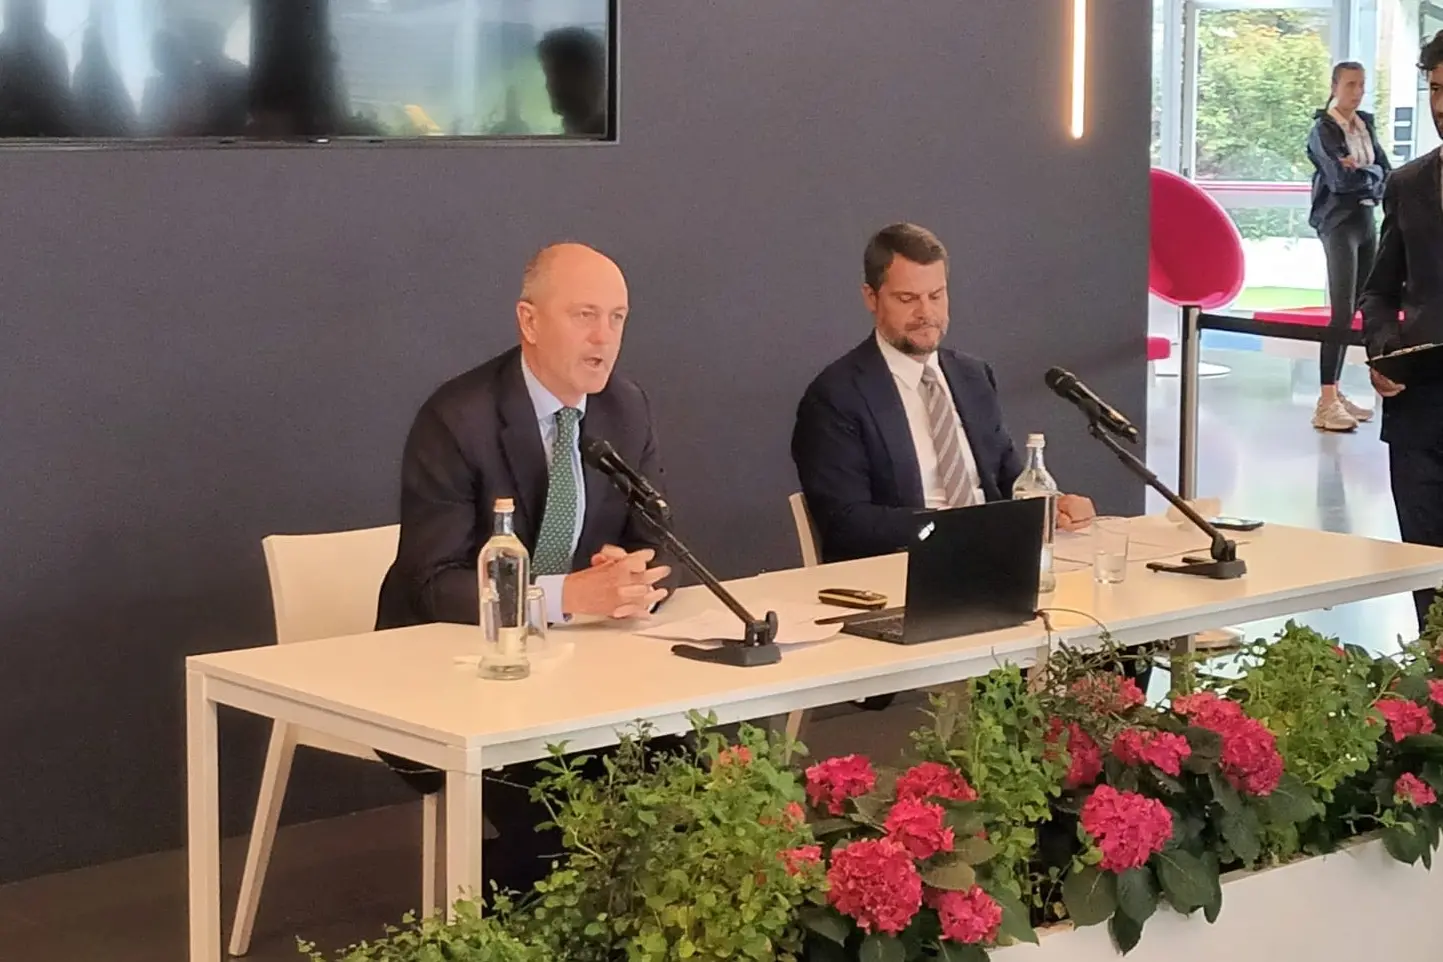 I presidenti Angelo Binaghi e Marco Mezzaroma durante la conferenza stampa di oggi (Foto Antonio Burruni)